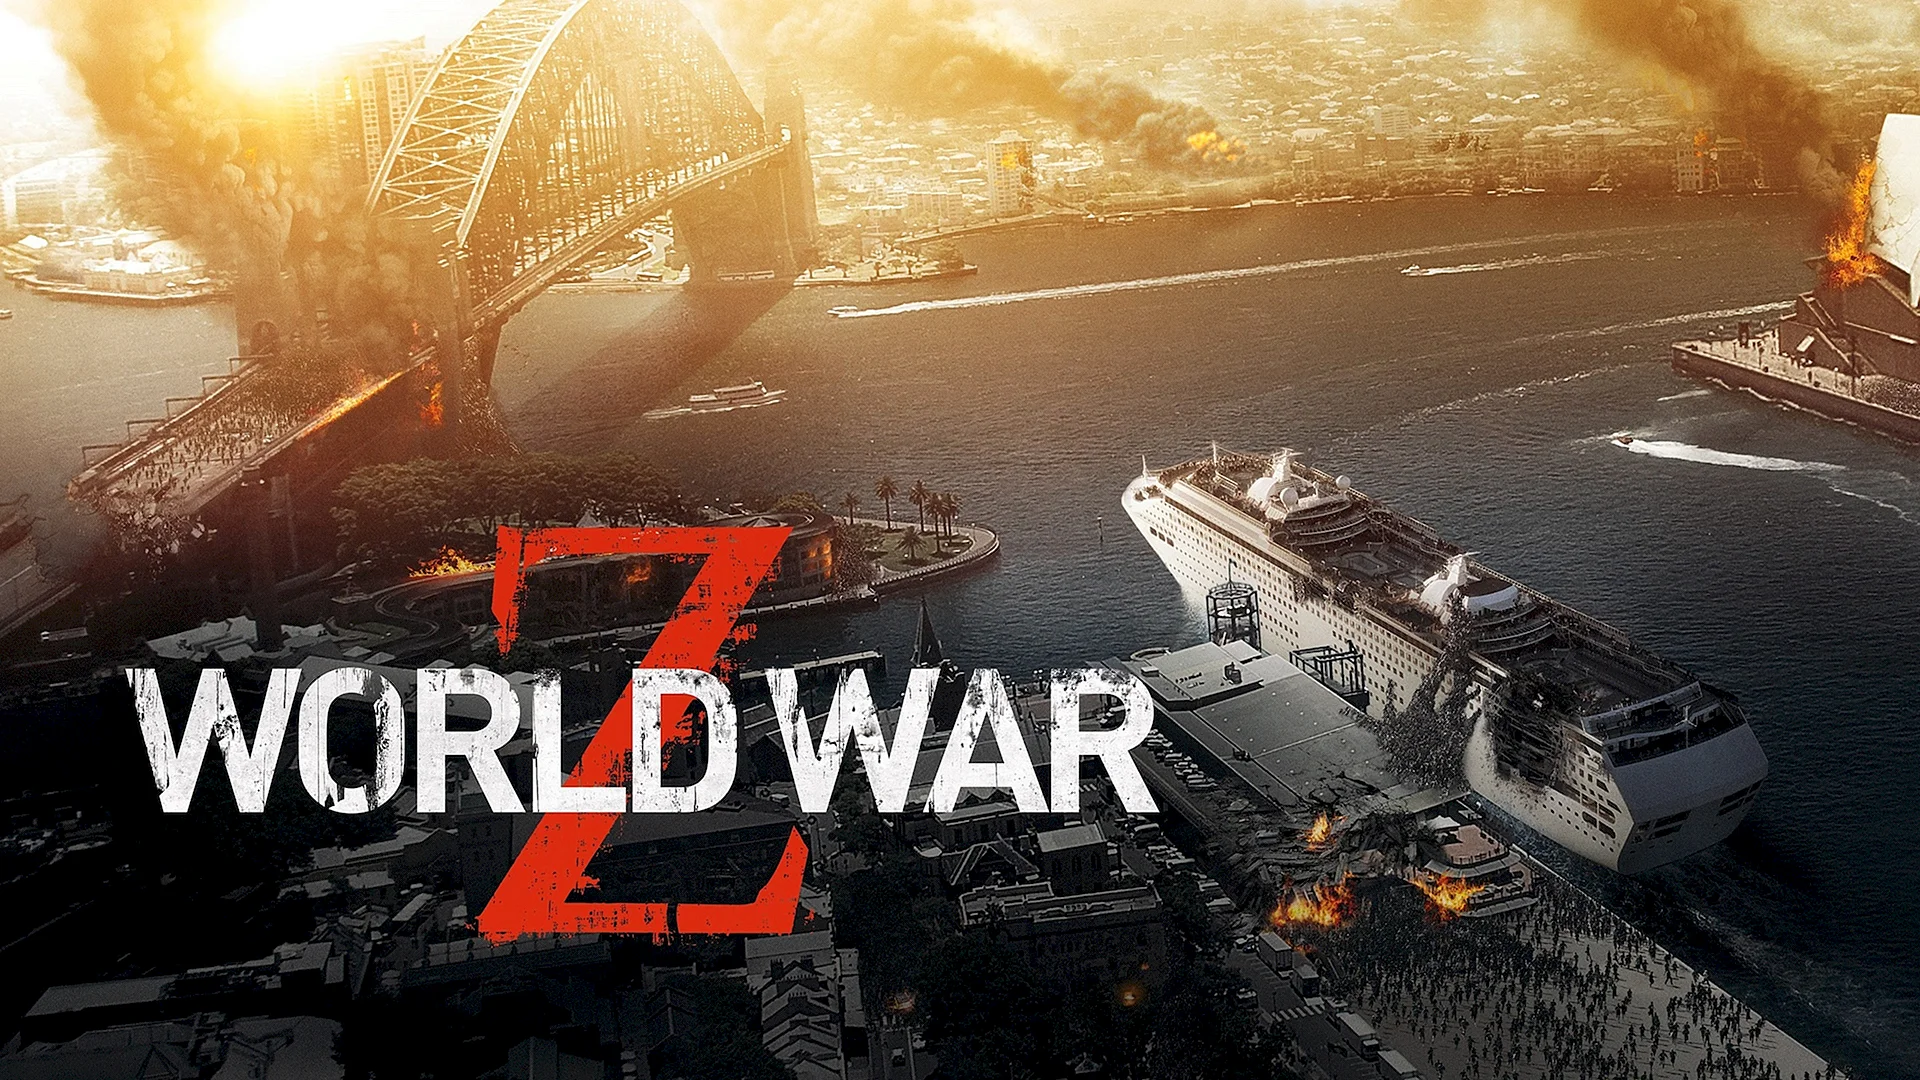 World War Z Poster Wallpaper